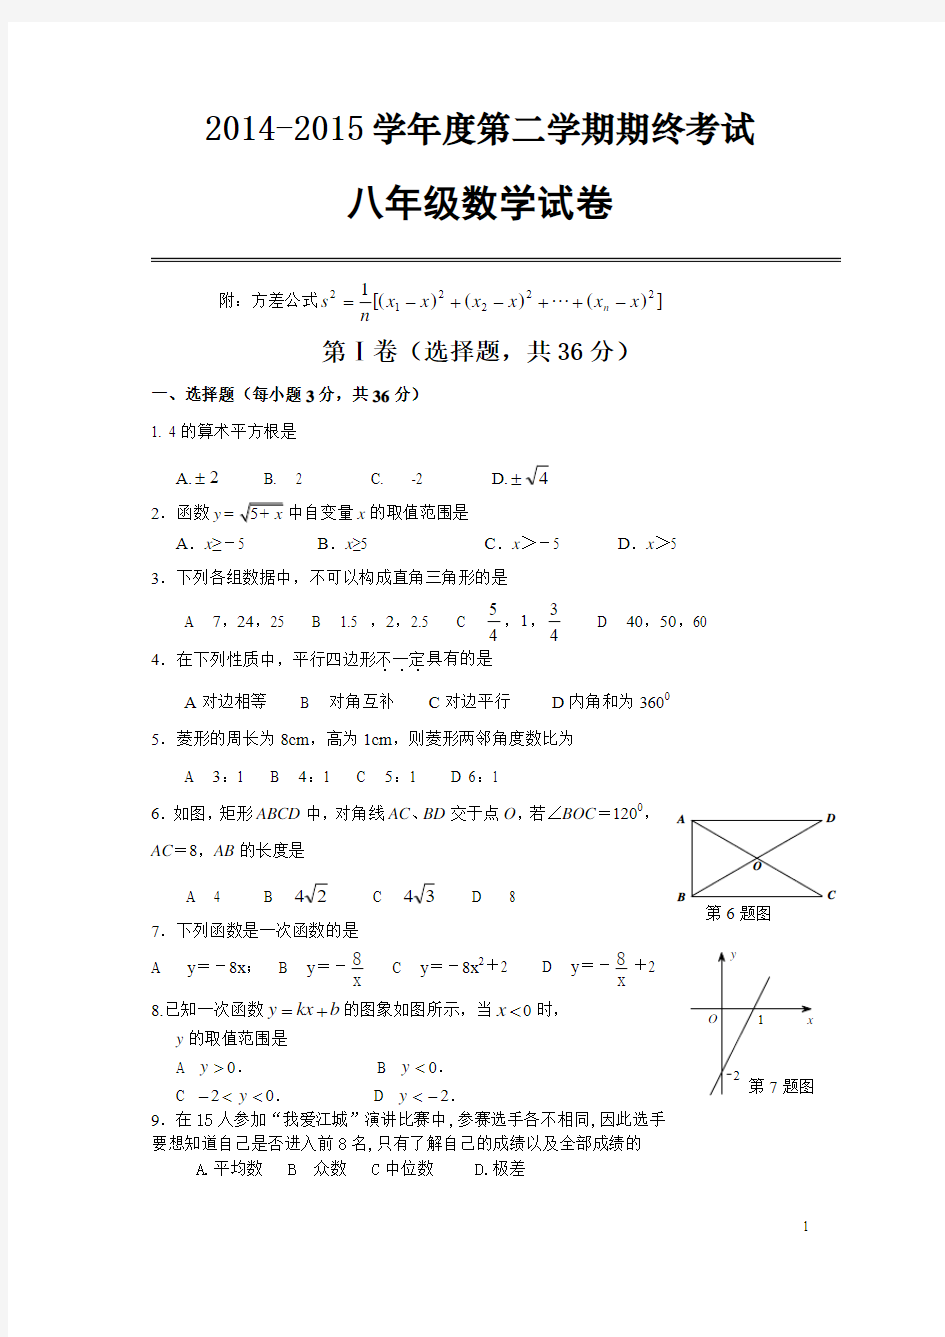 人教版湖北省武汉市汉阳区2014-2015年八年级下期末考试数学试题及答案